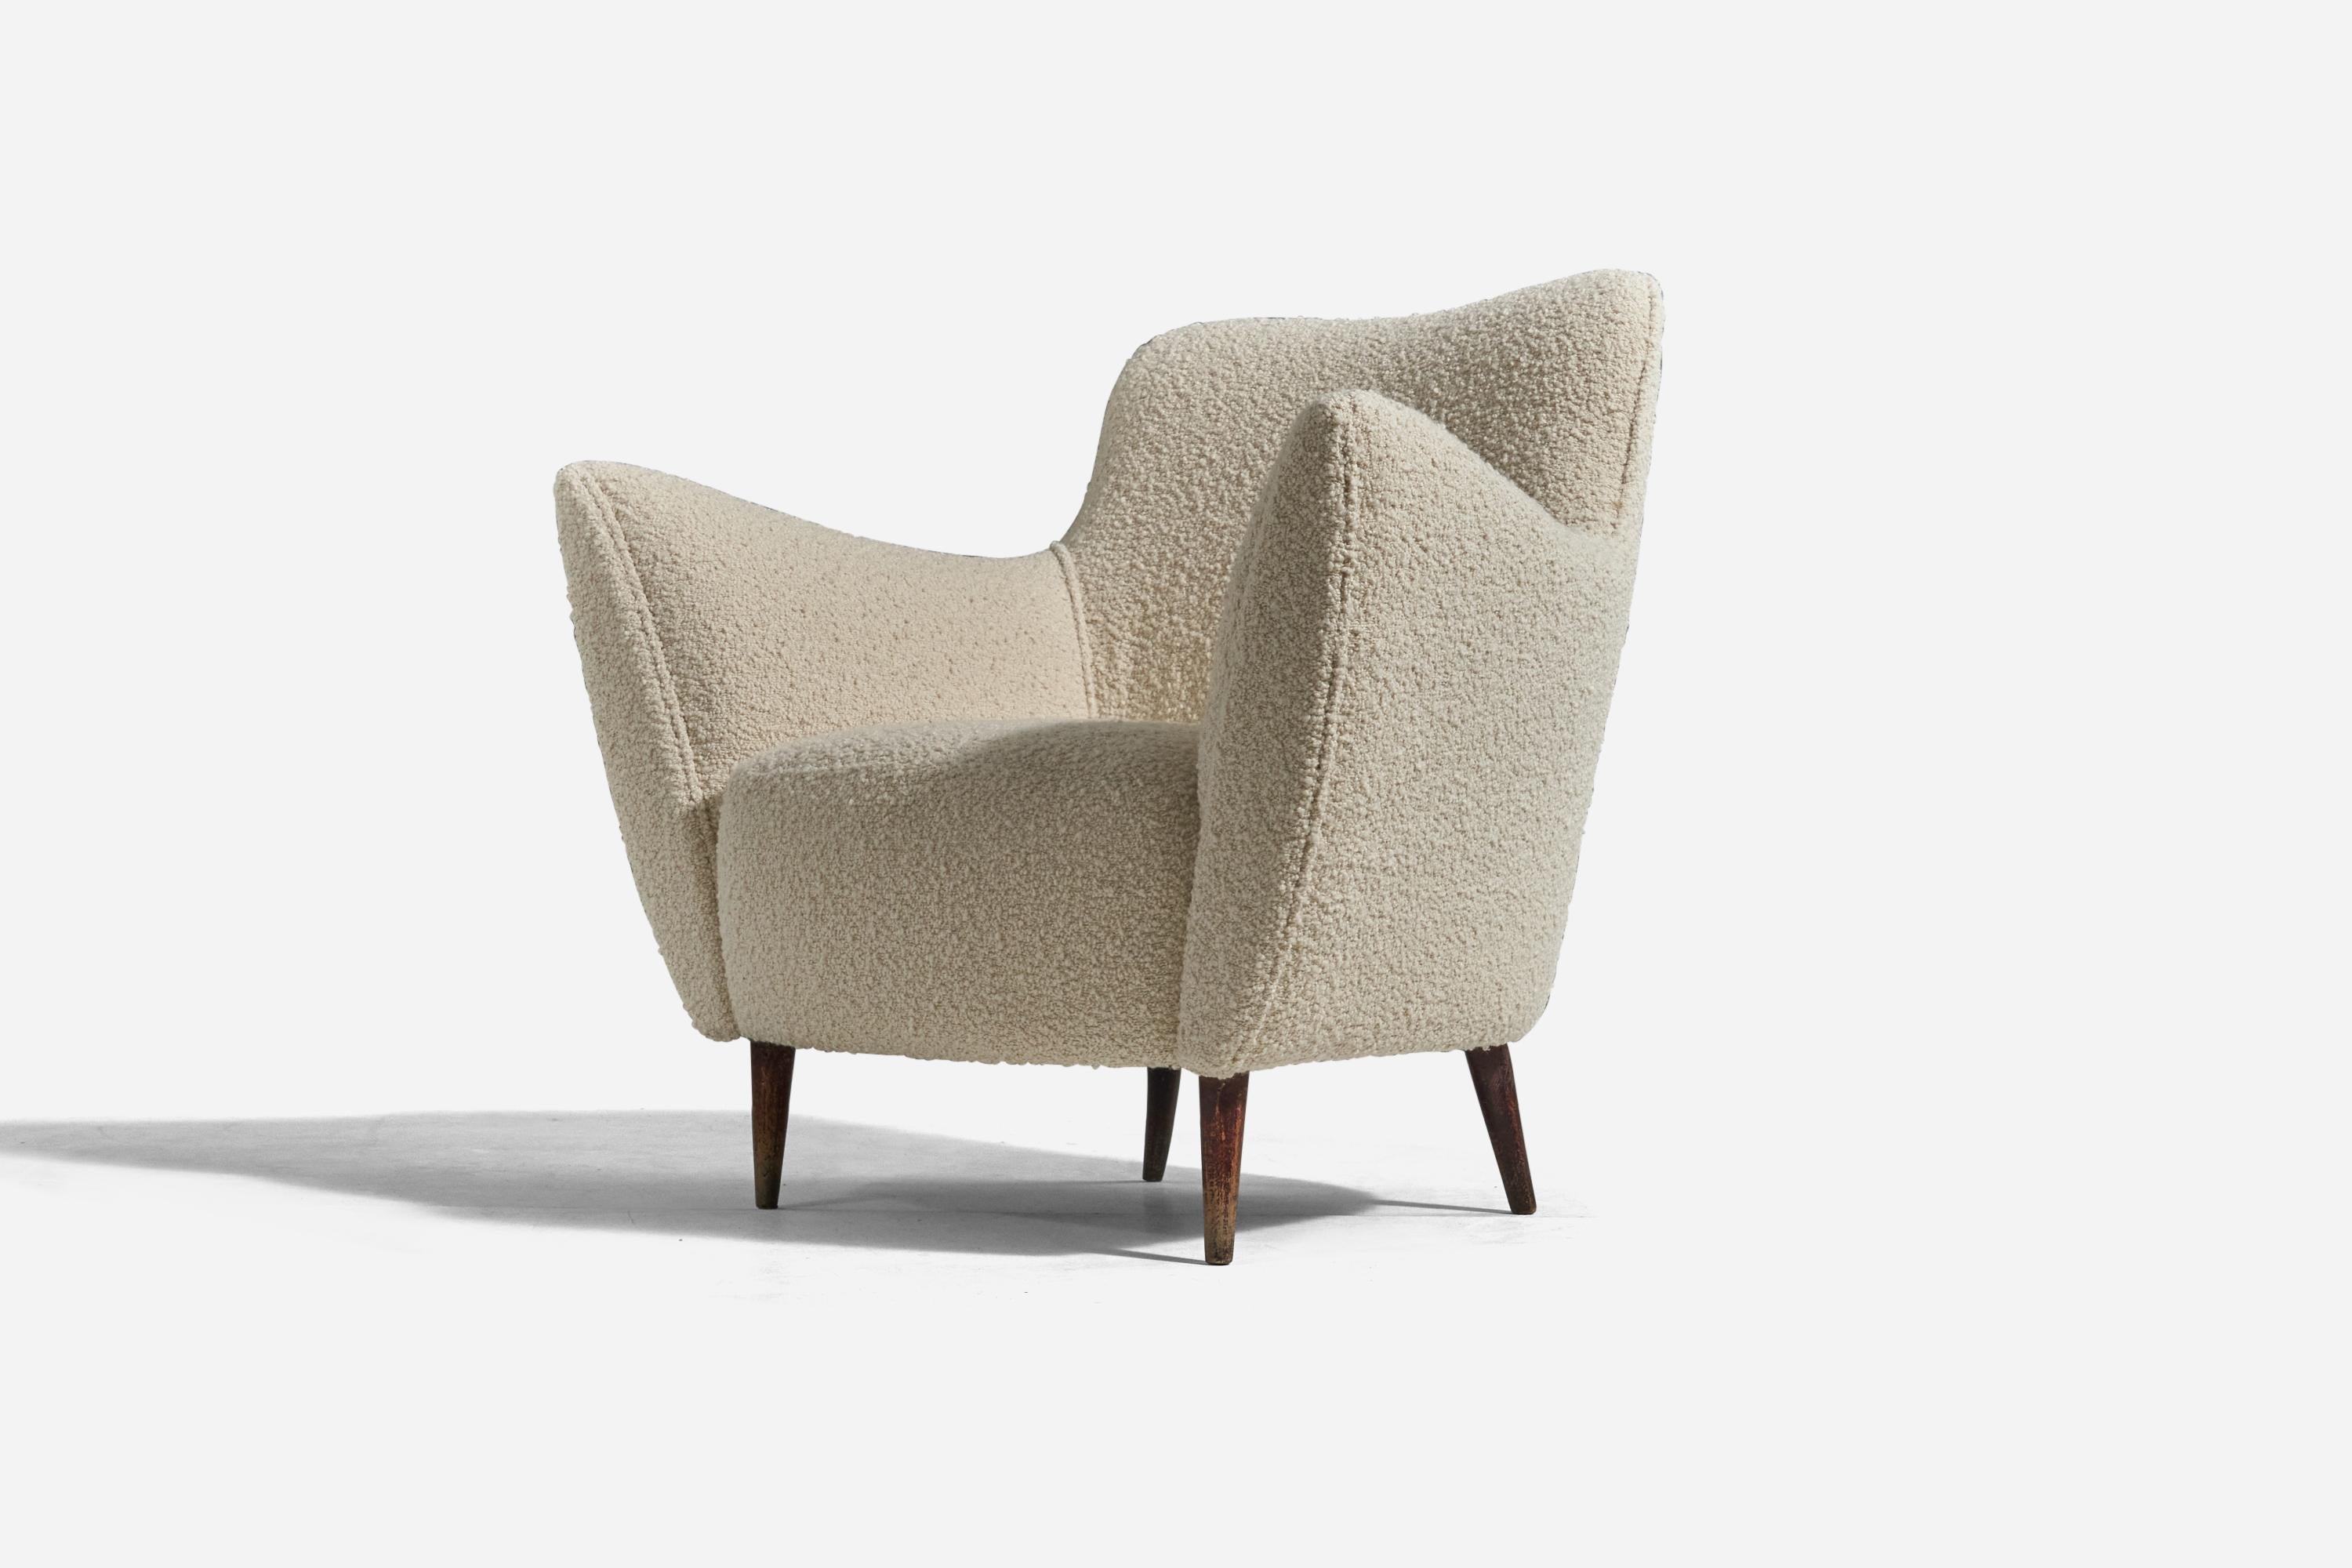 Italian Guglielmo Veronesi, Lounge Chairs, Wood, White Fabric, ISA Bergamo, Italy, 1950s For Sale